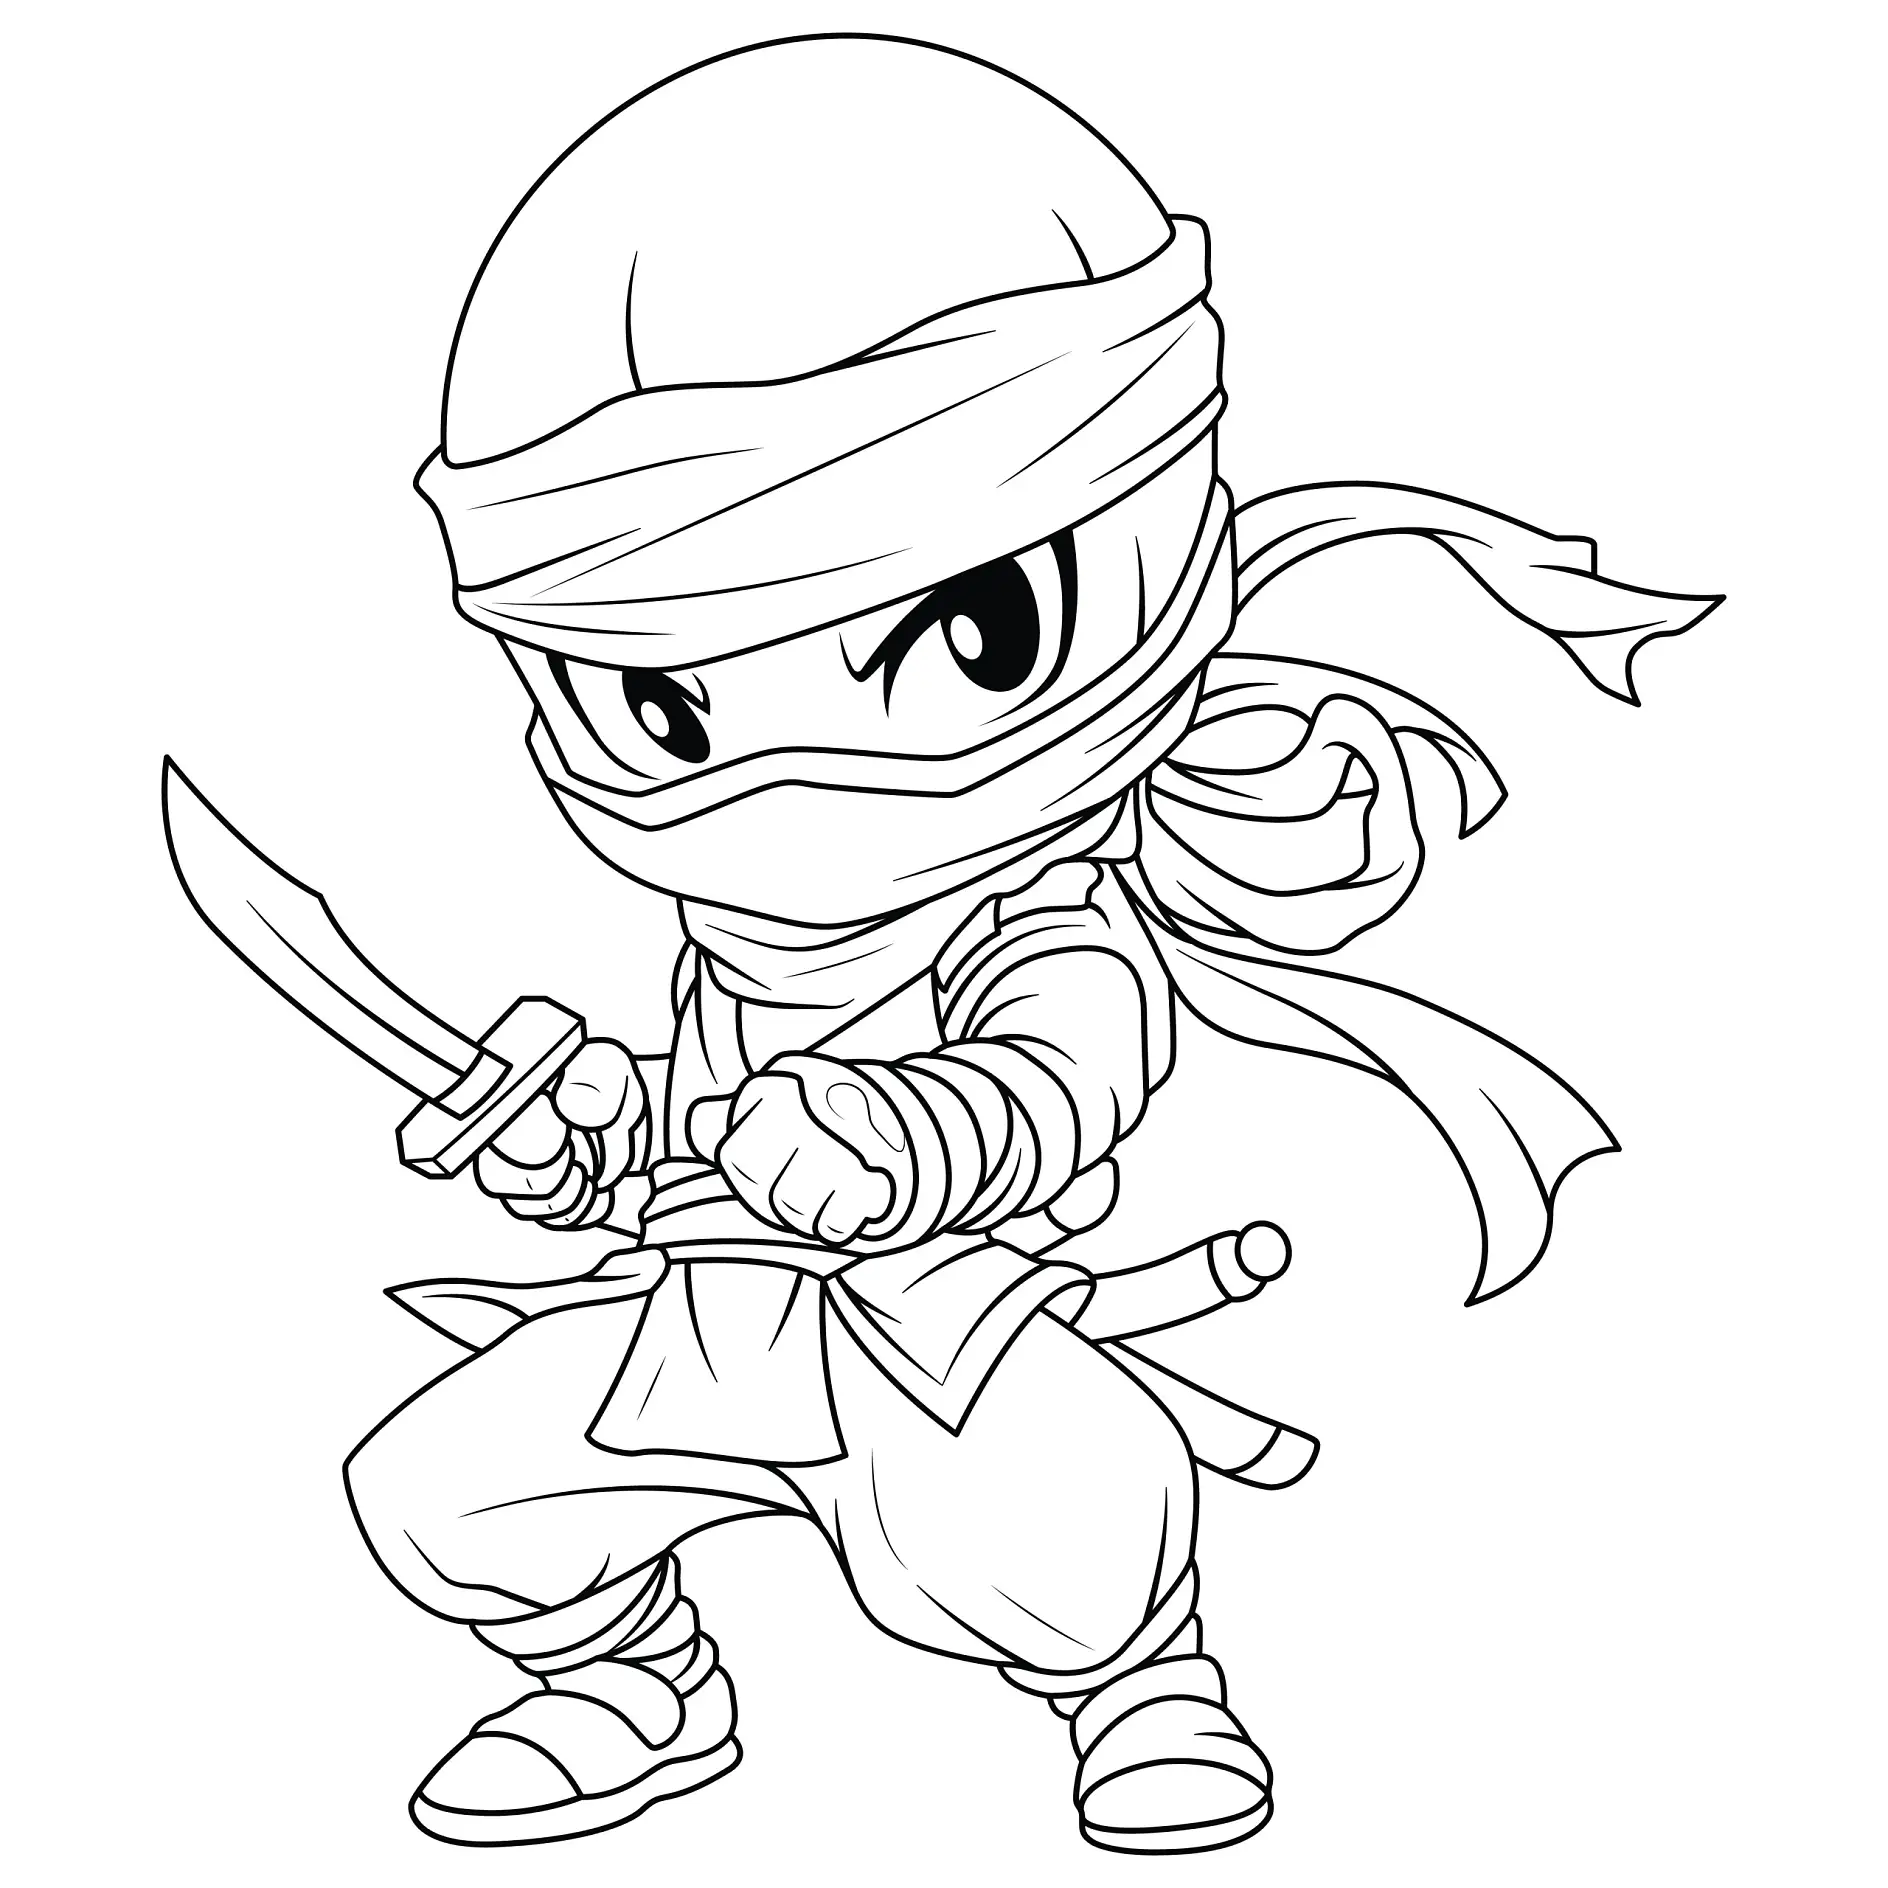 Ausmalbild Ninja mit Schwert in Kampfhaltung